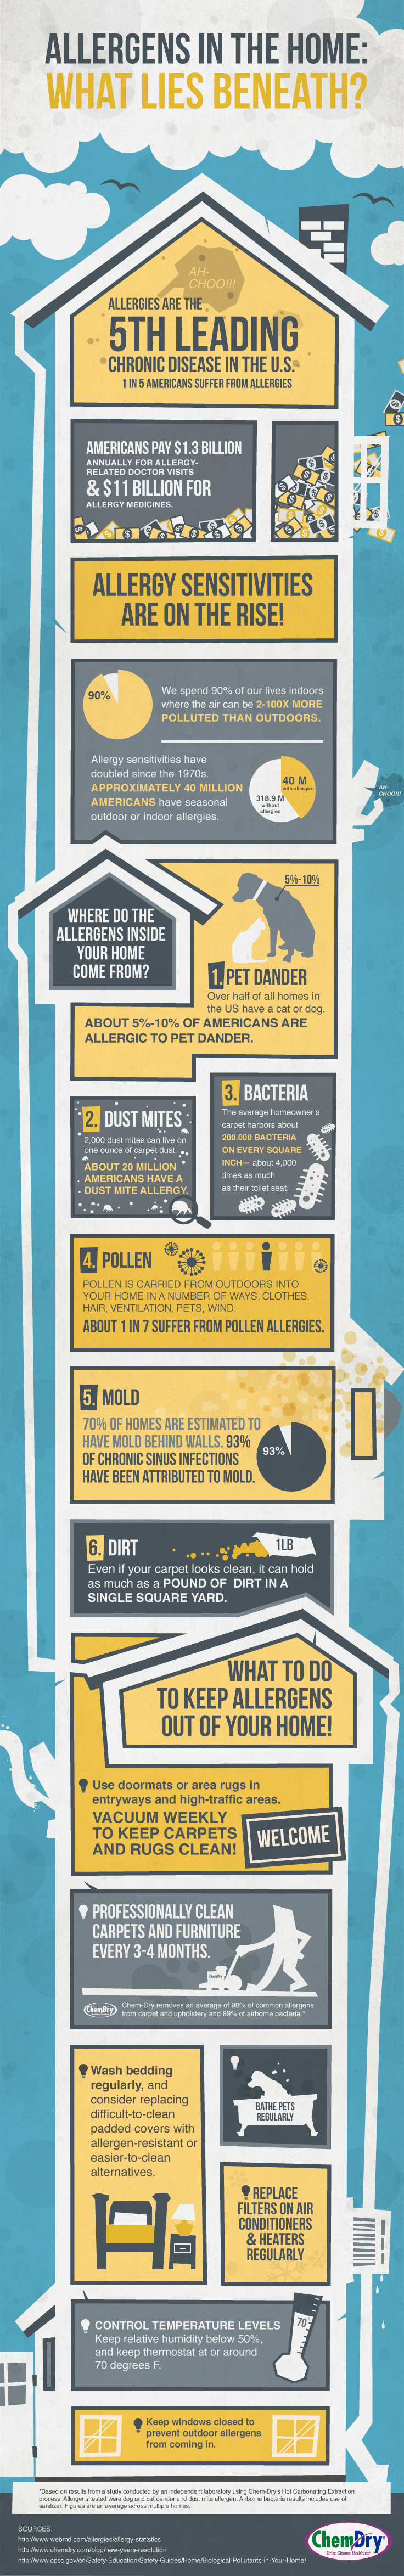 Indoor allergens infographic